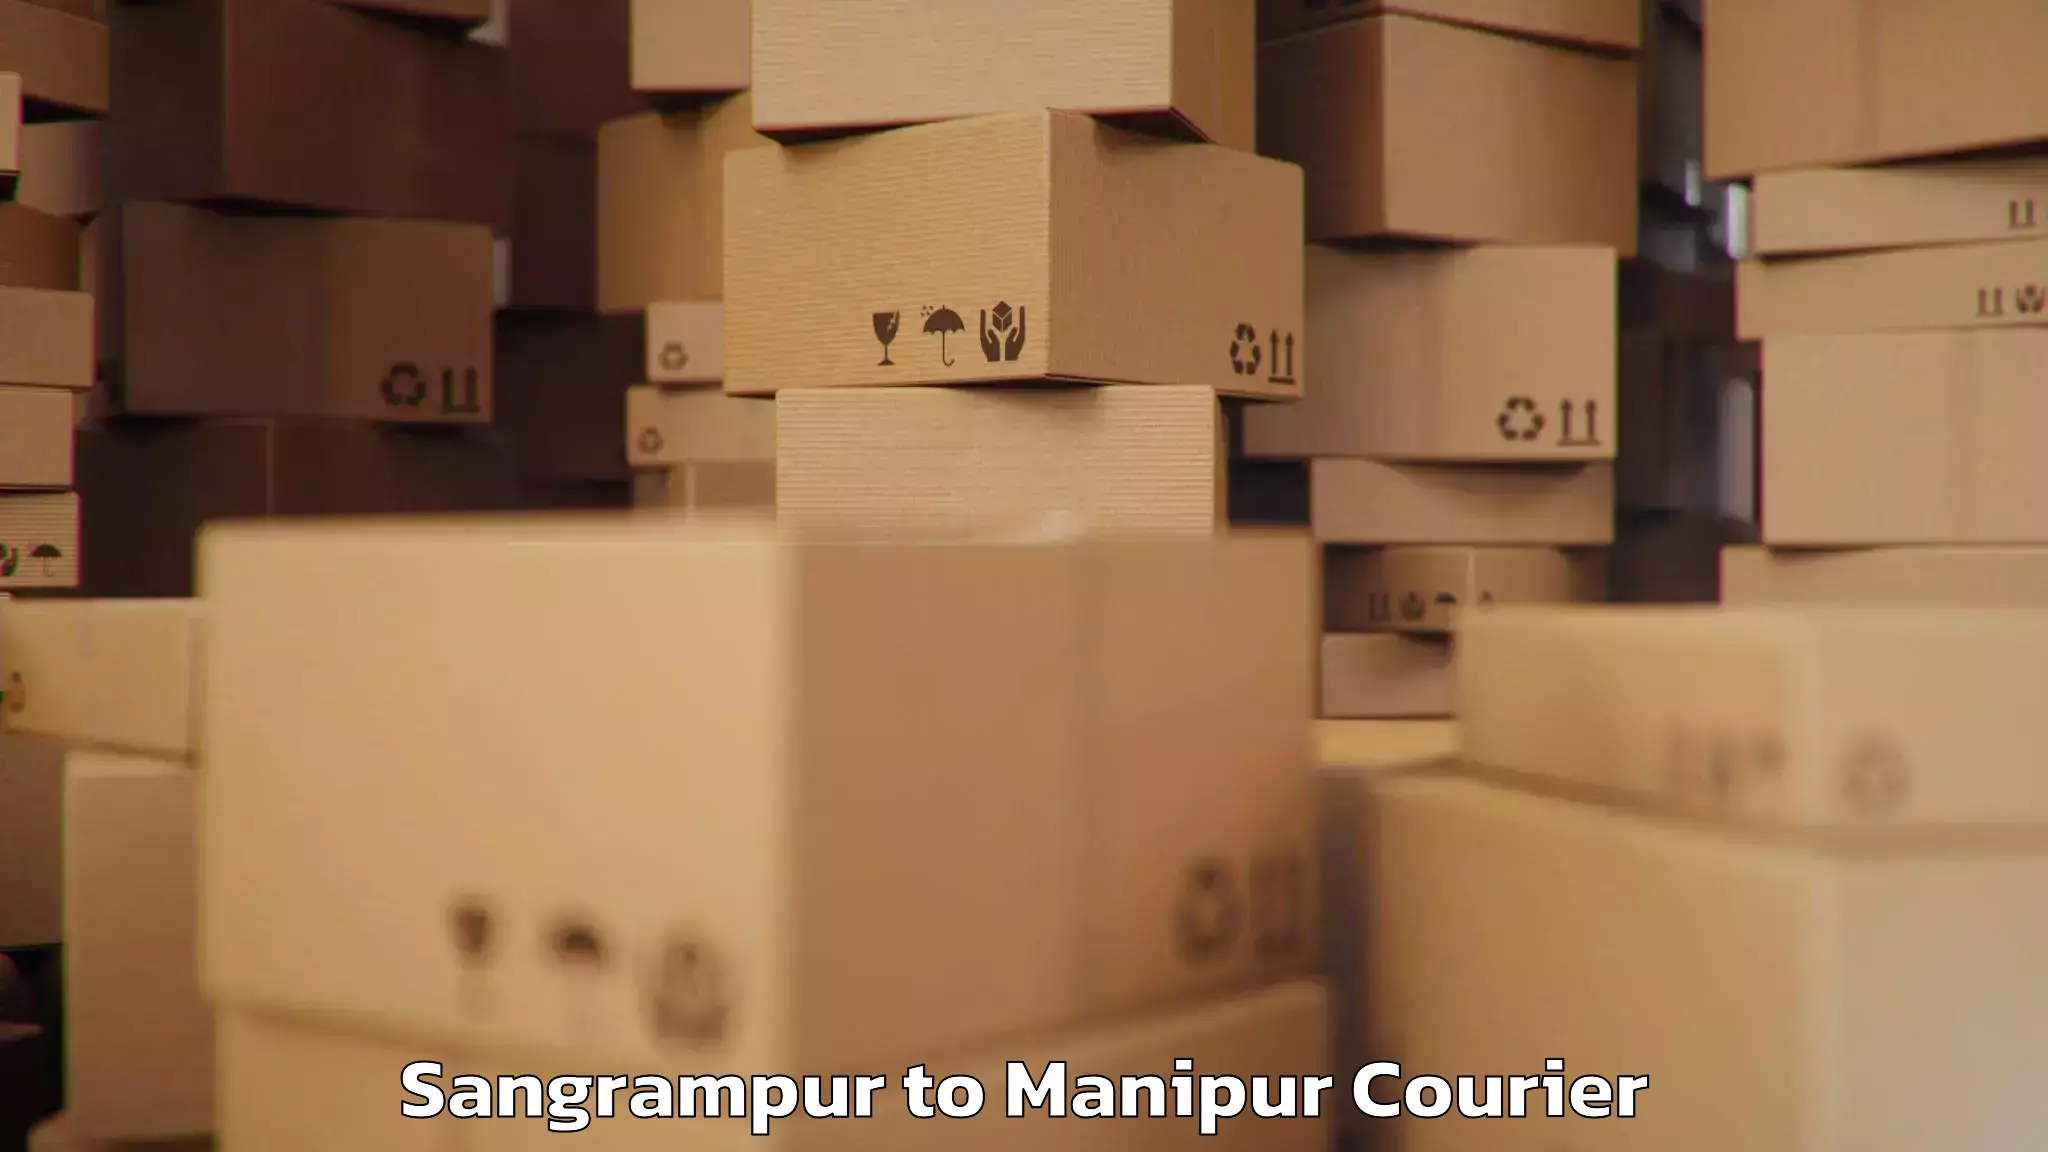 Luggage forwarding service Sangrampur to Manipur